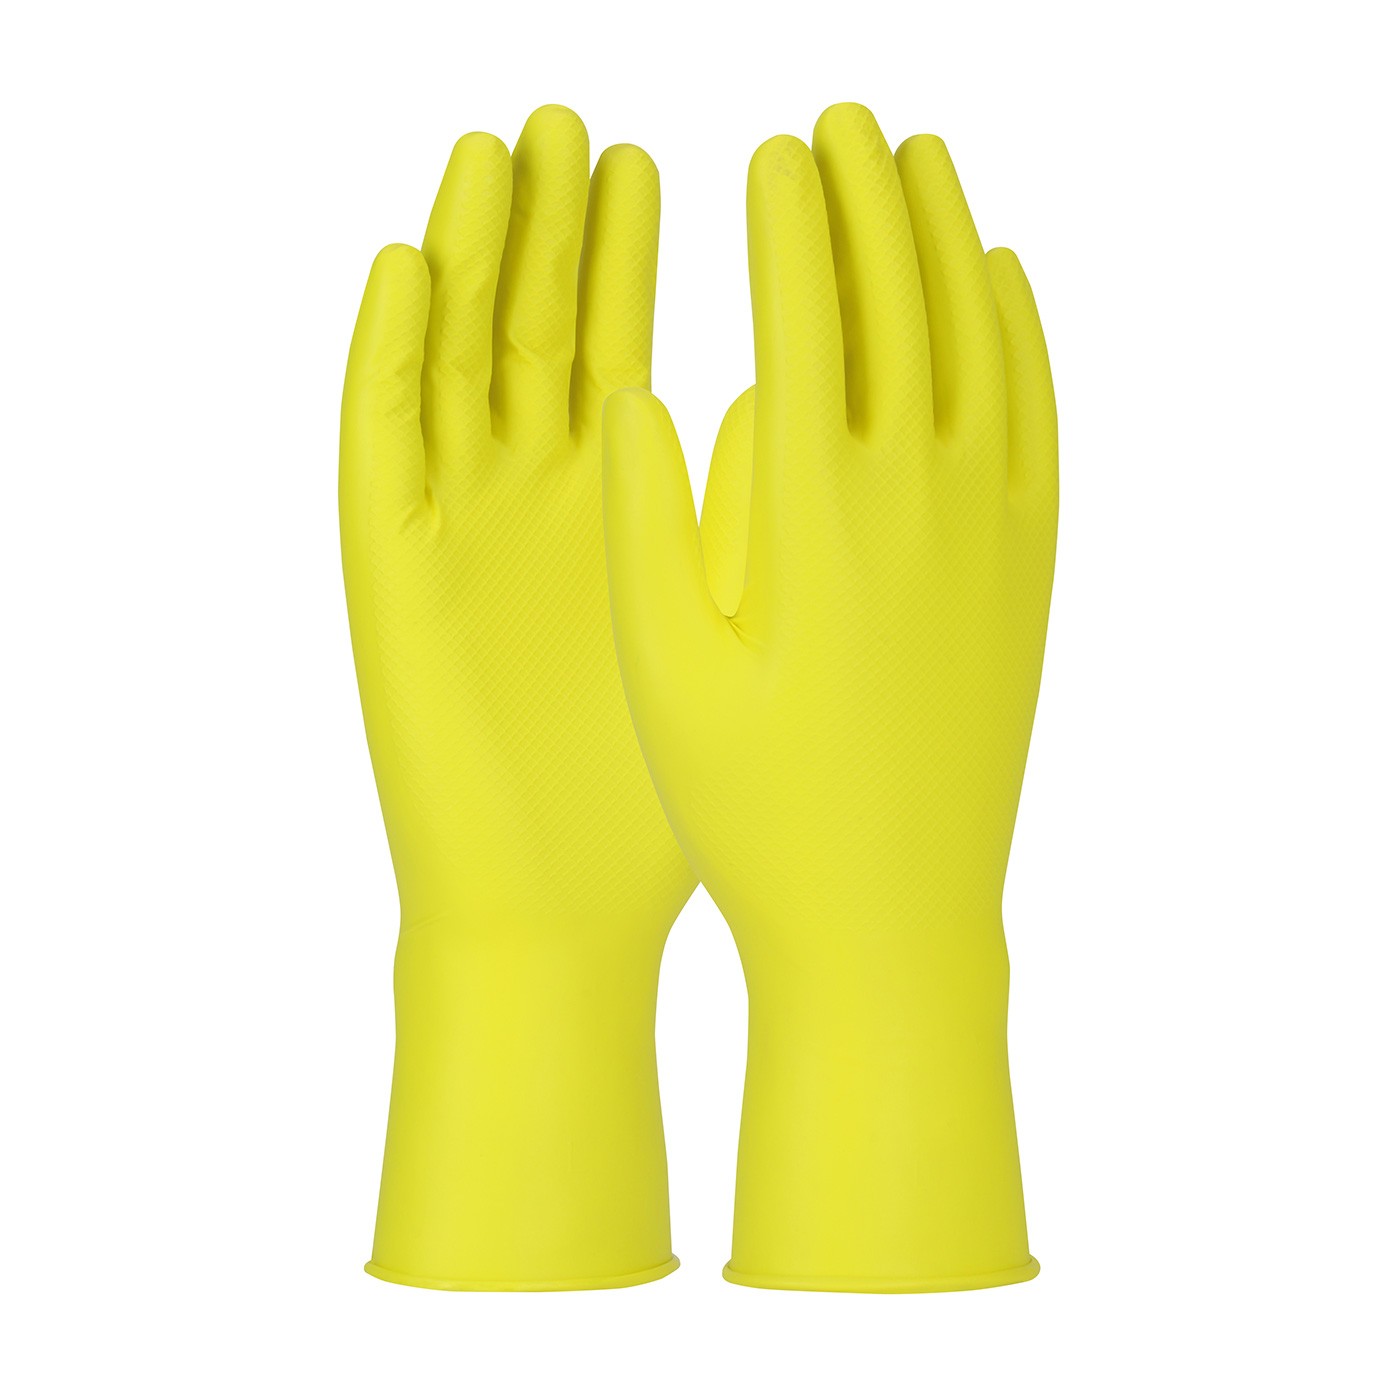 Grippaz™ Jan San Superior Ambidextrous Nitrile Glove with Textured Fish Scale Grip - 6 Mil  (#67-306)